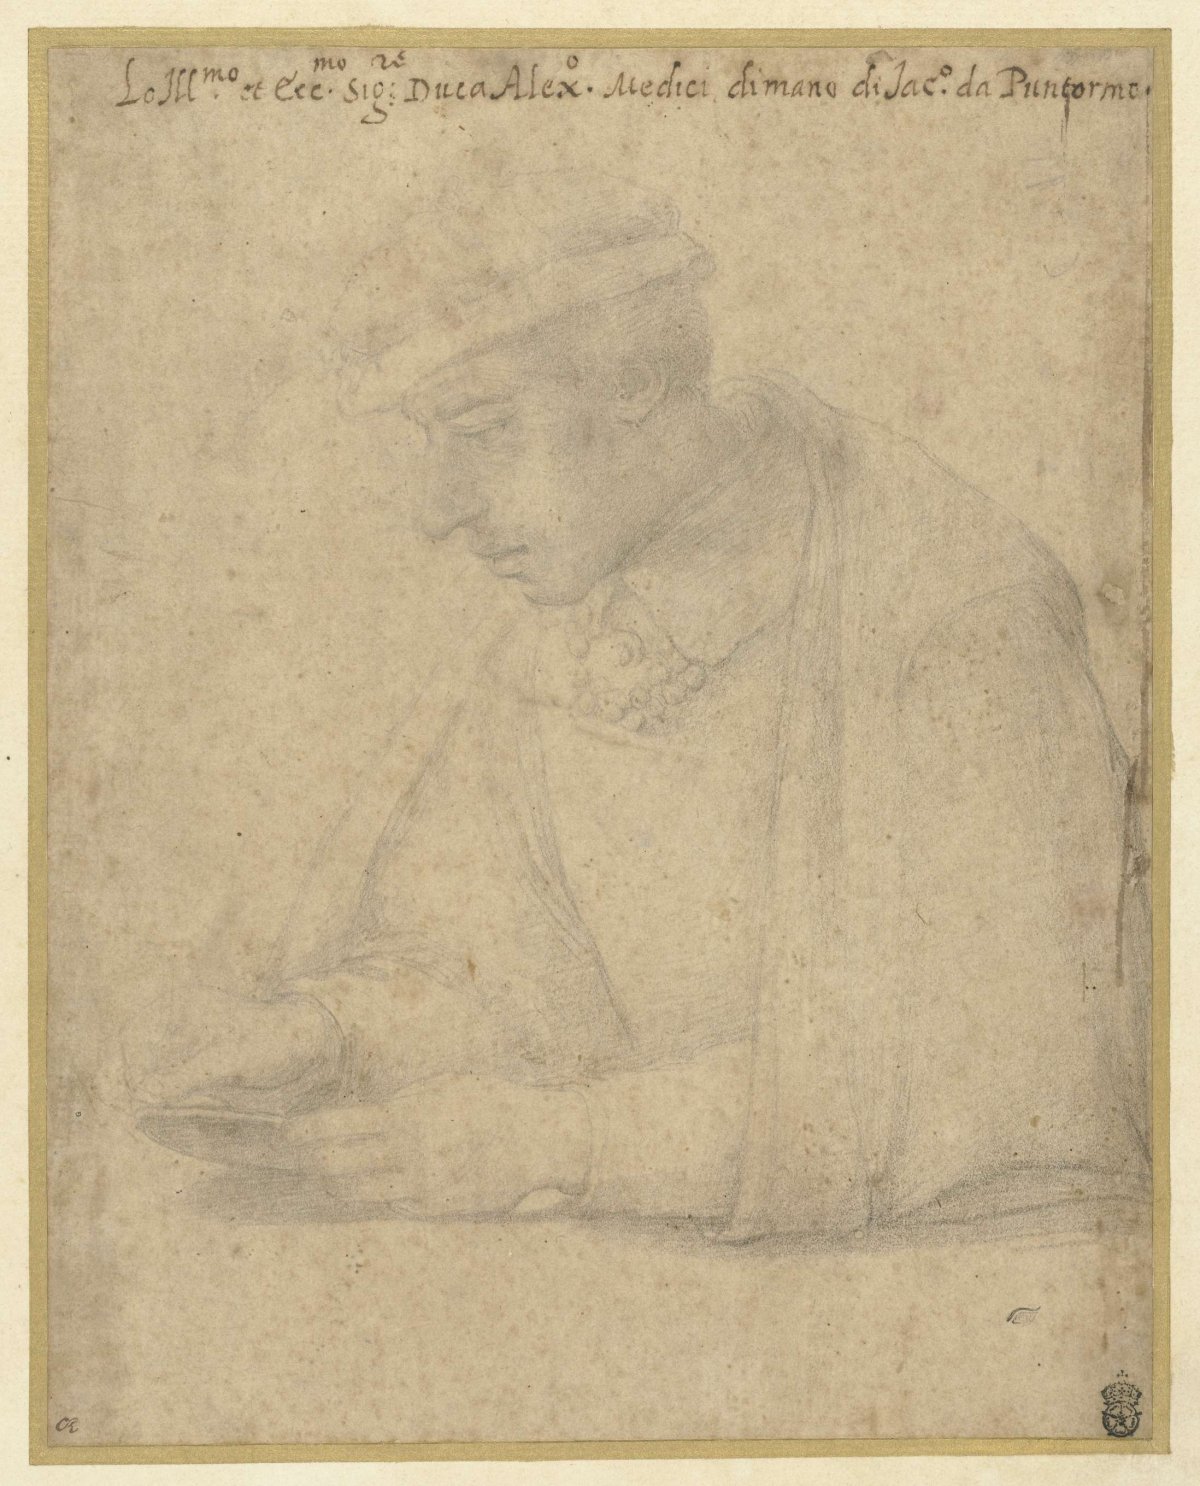 Alessandro de' Medici, Jacopo Pontormo, c. 1530 - c. 1570